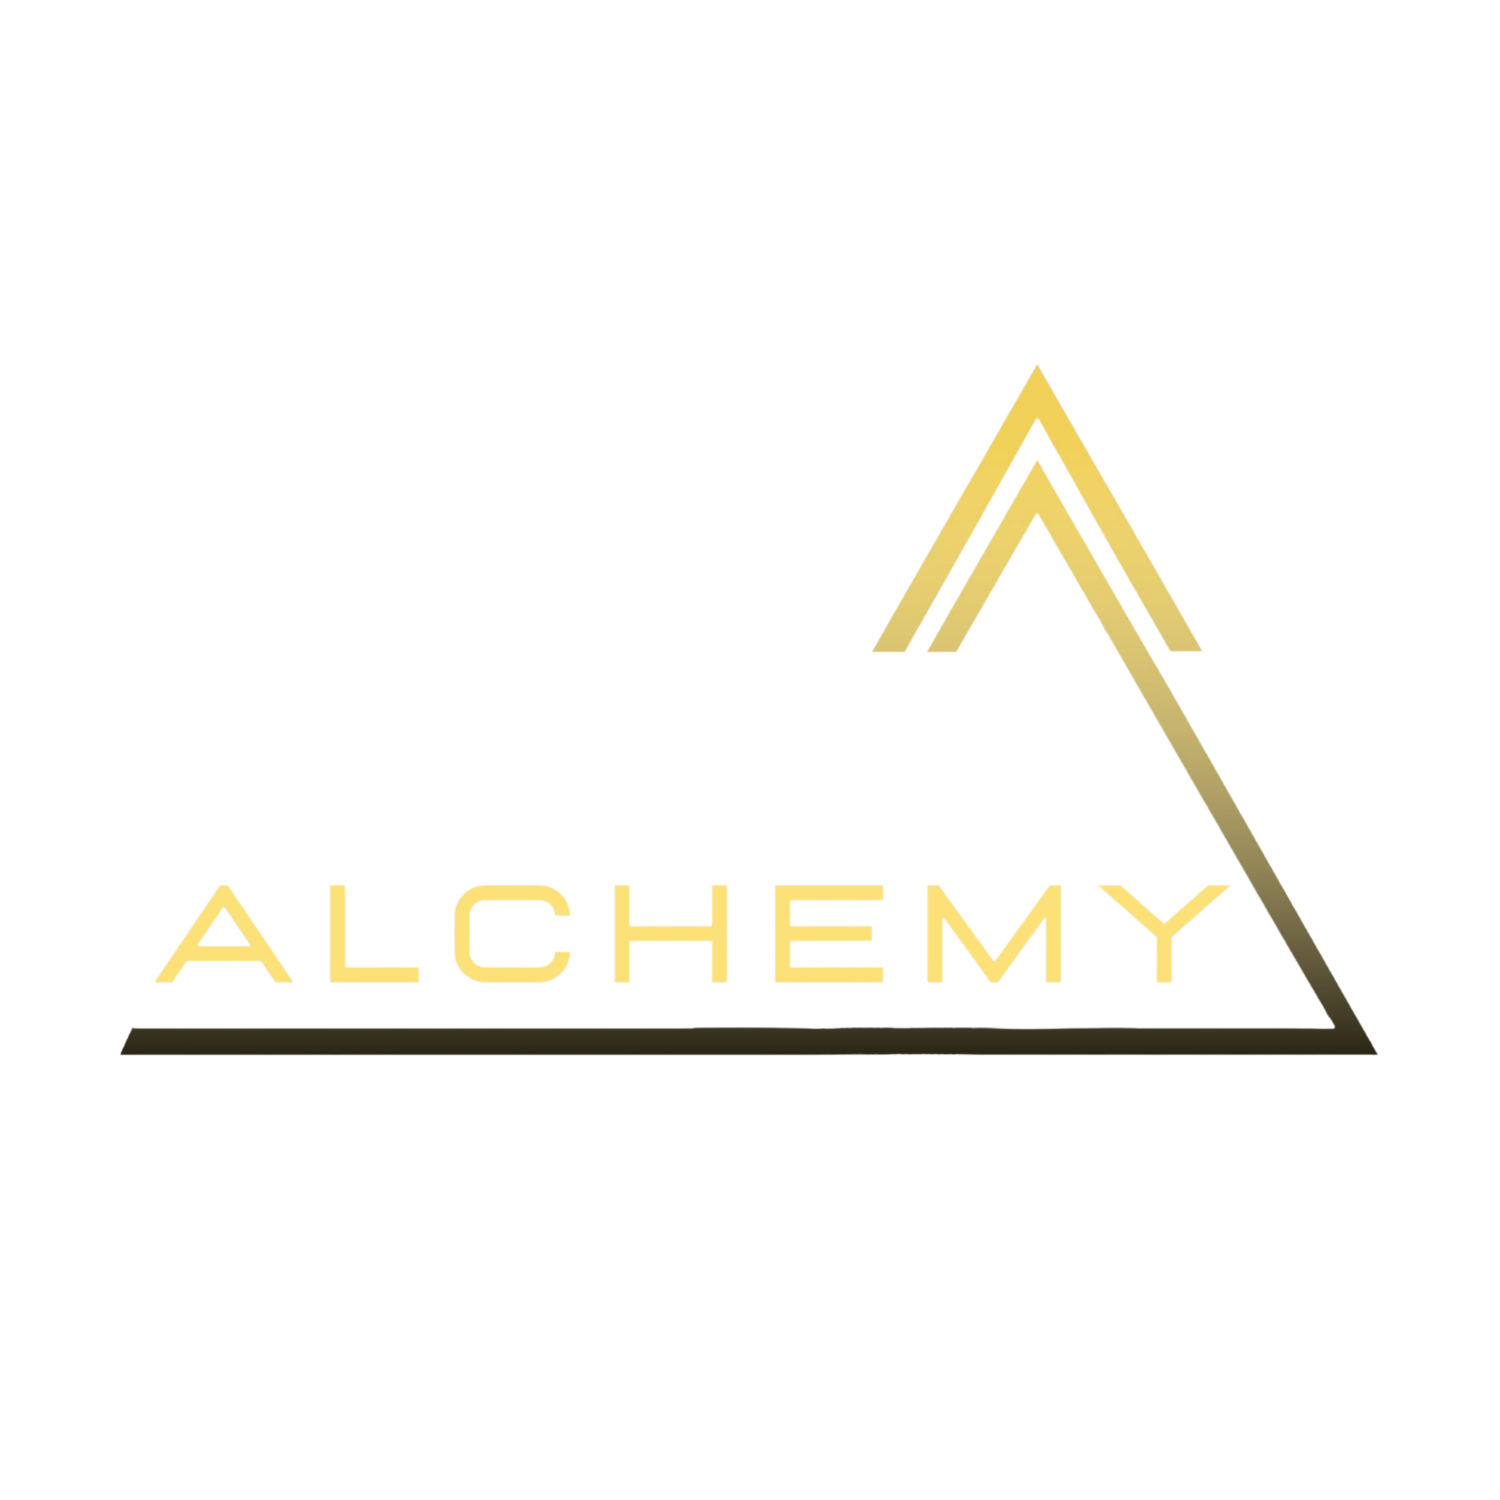 Alchemy Sports Performance